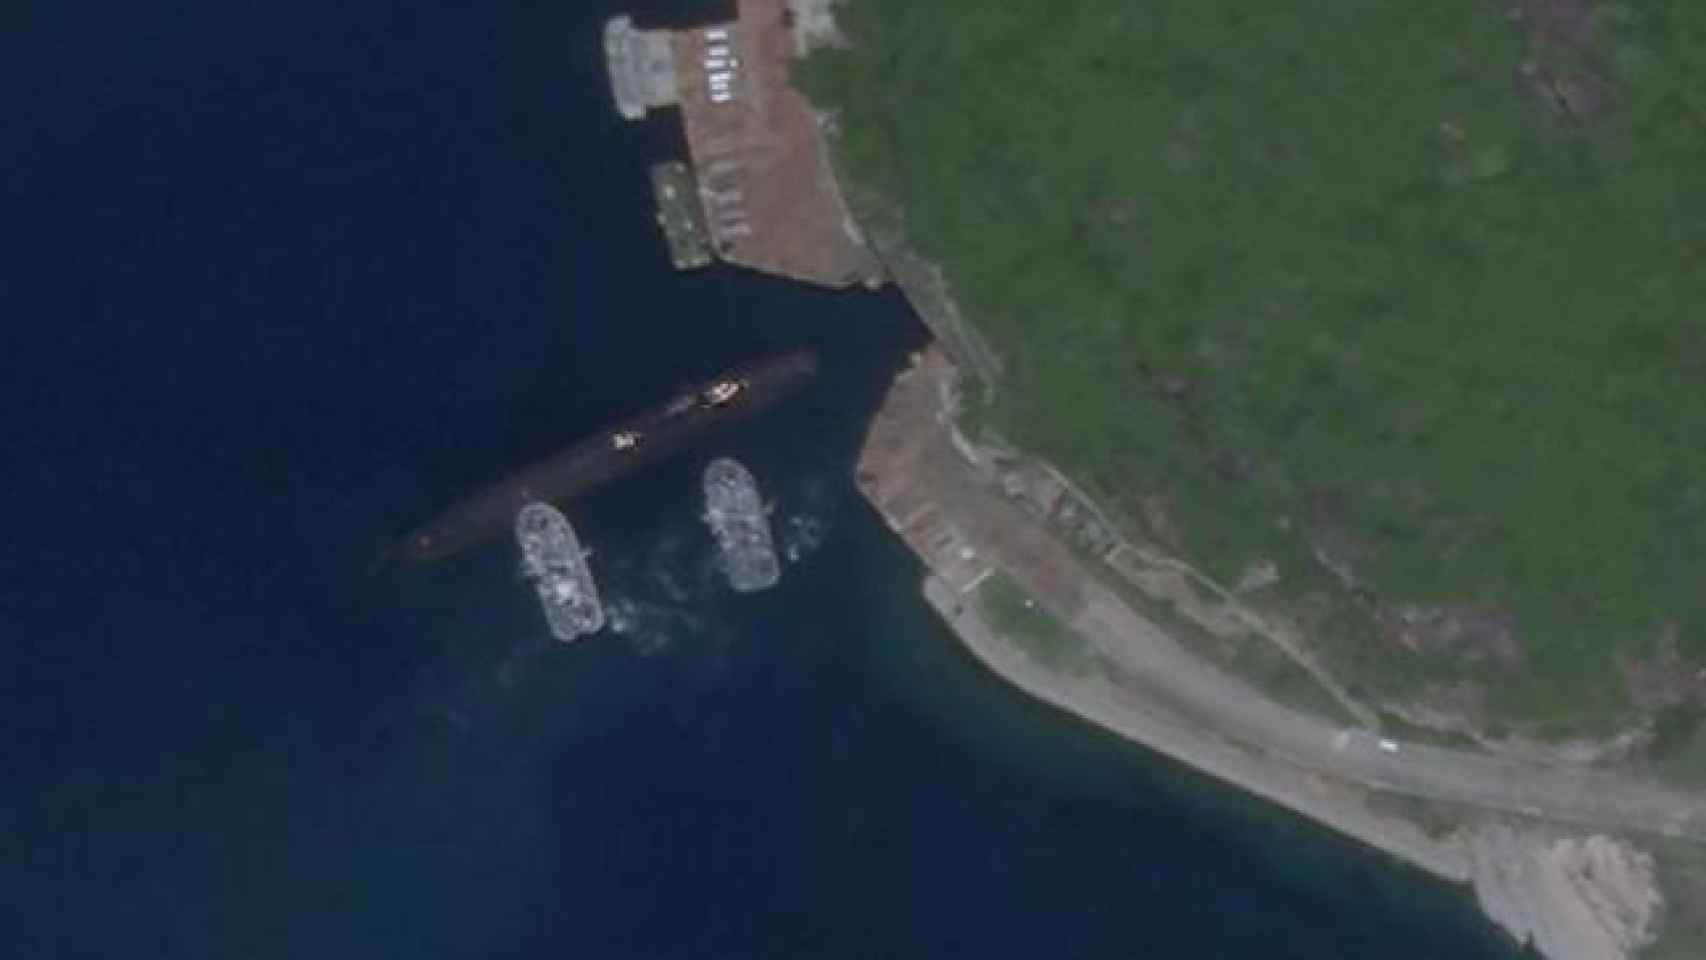 Submarino chino tipo 093, en una base en la isla de Hainan, zona en conflicto, en 2020.